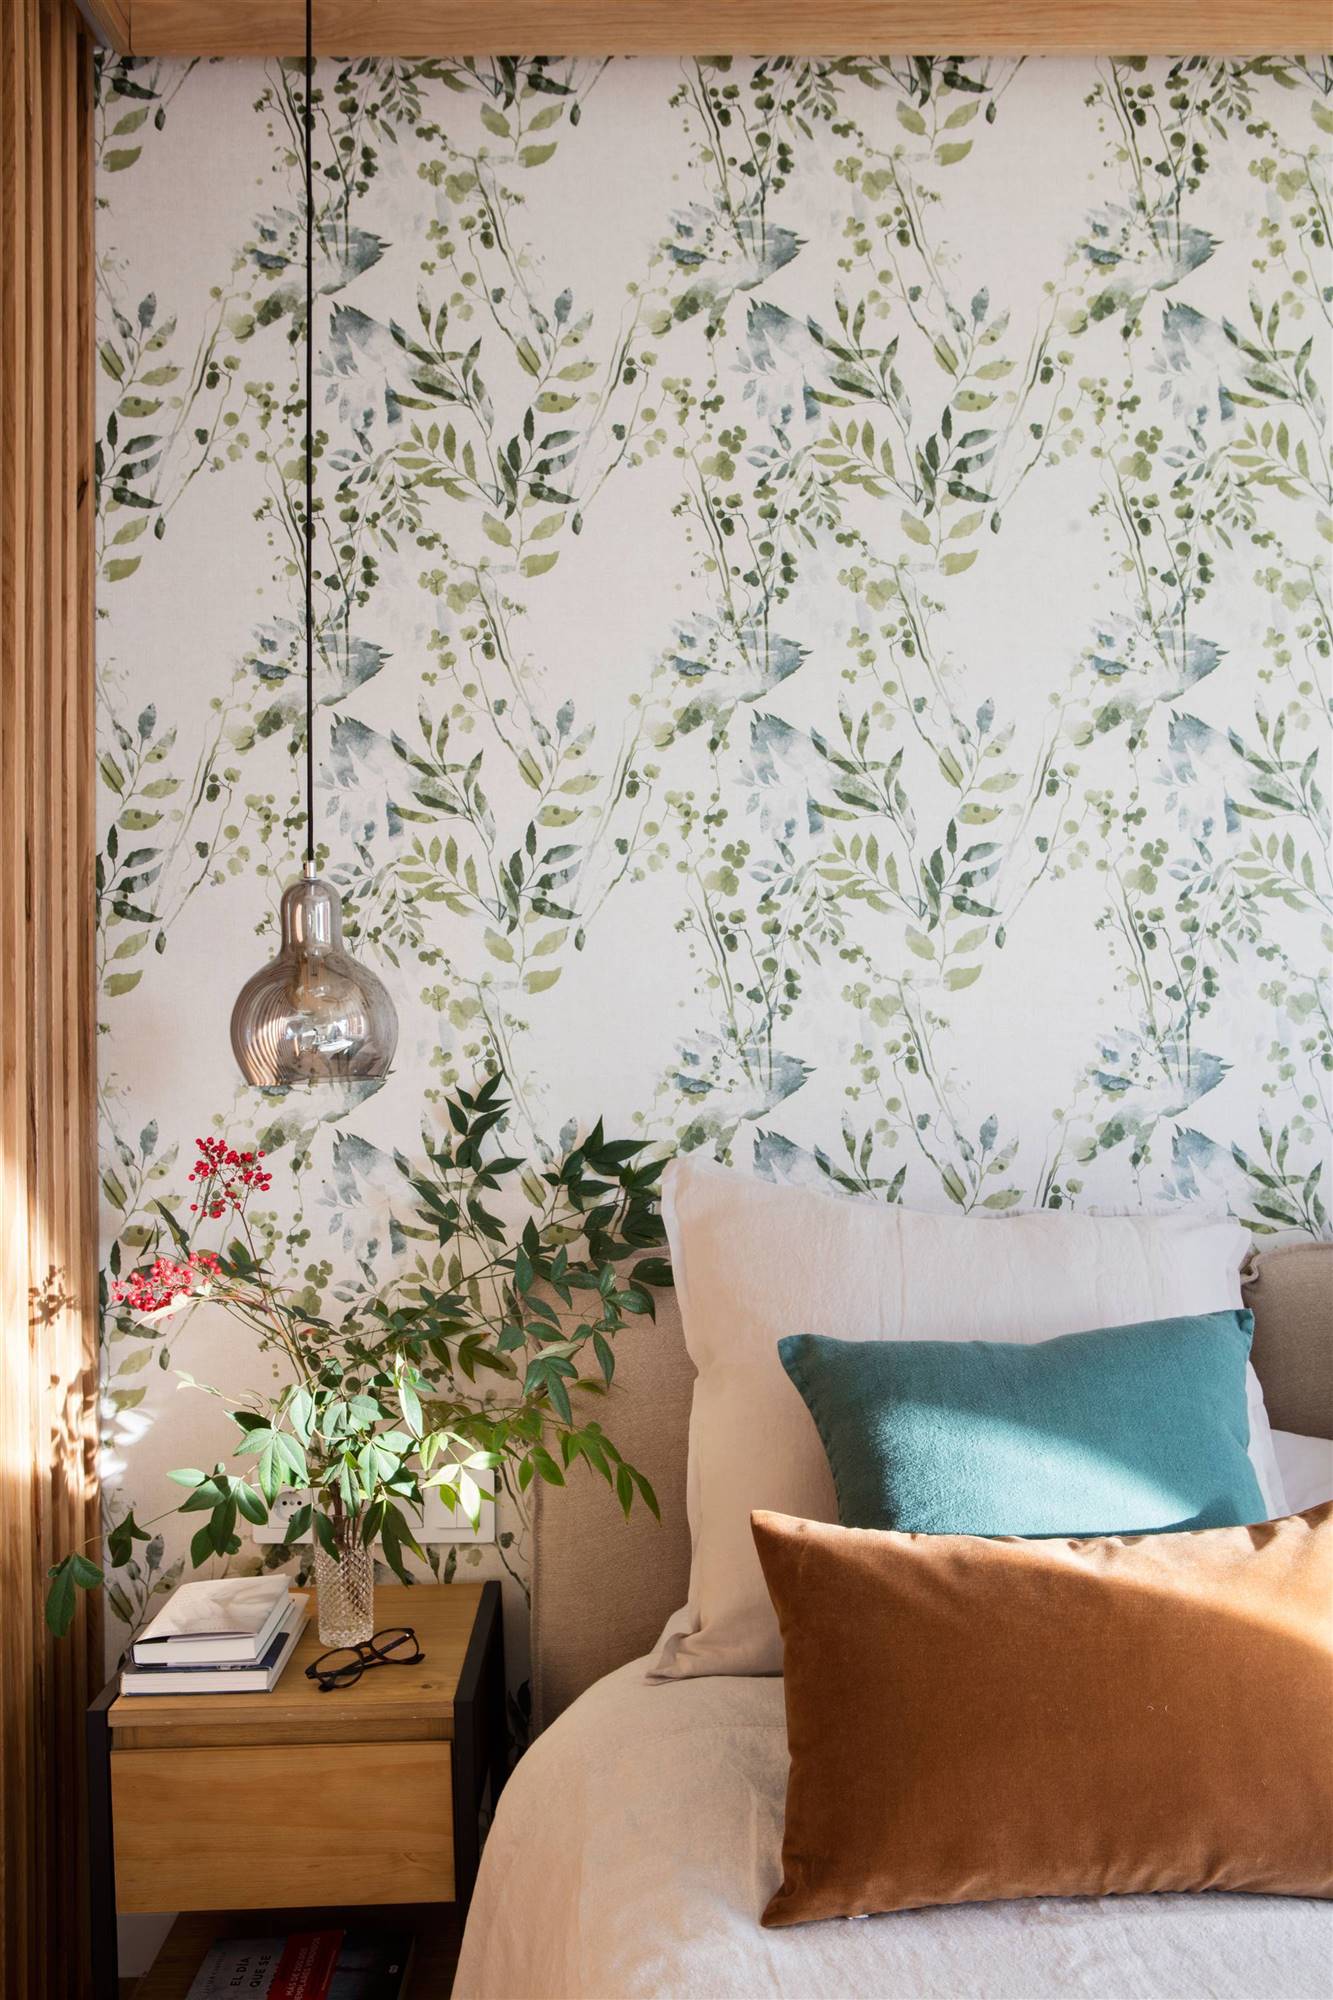 Dormitorio con papel pintado de flores en la pared del cabecero.